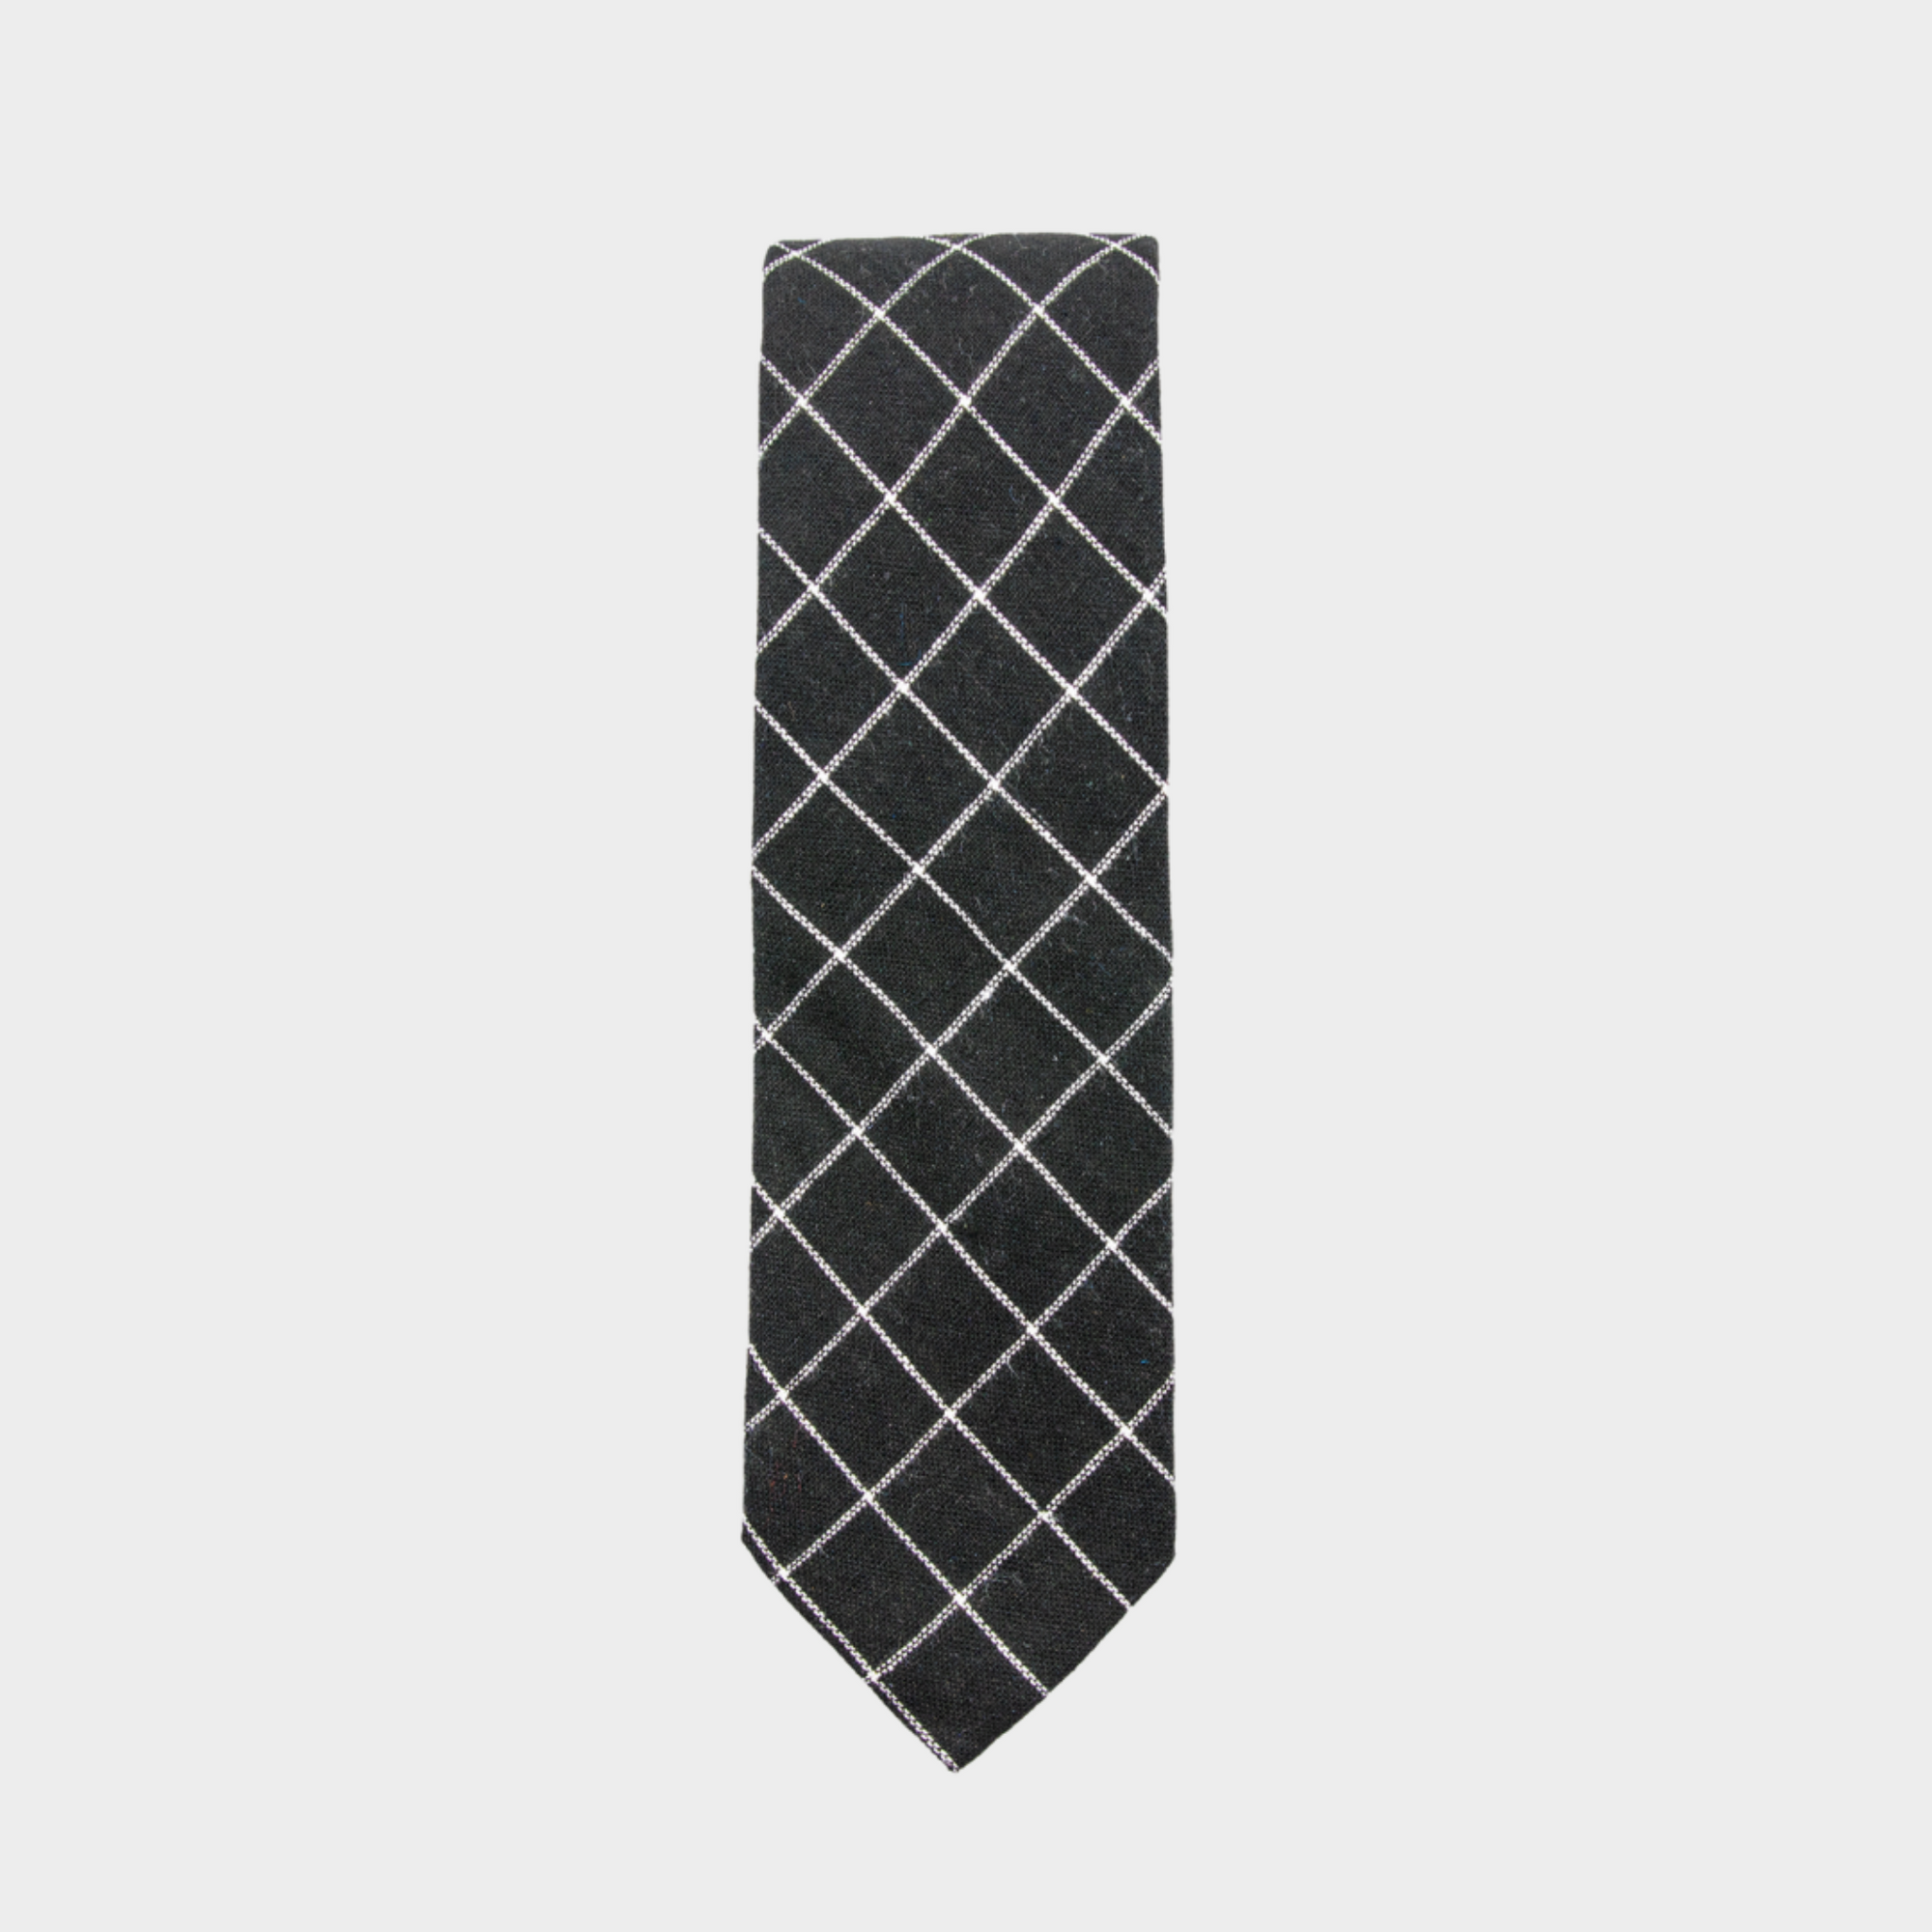 TAYSOM - Men's Tie